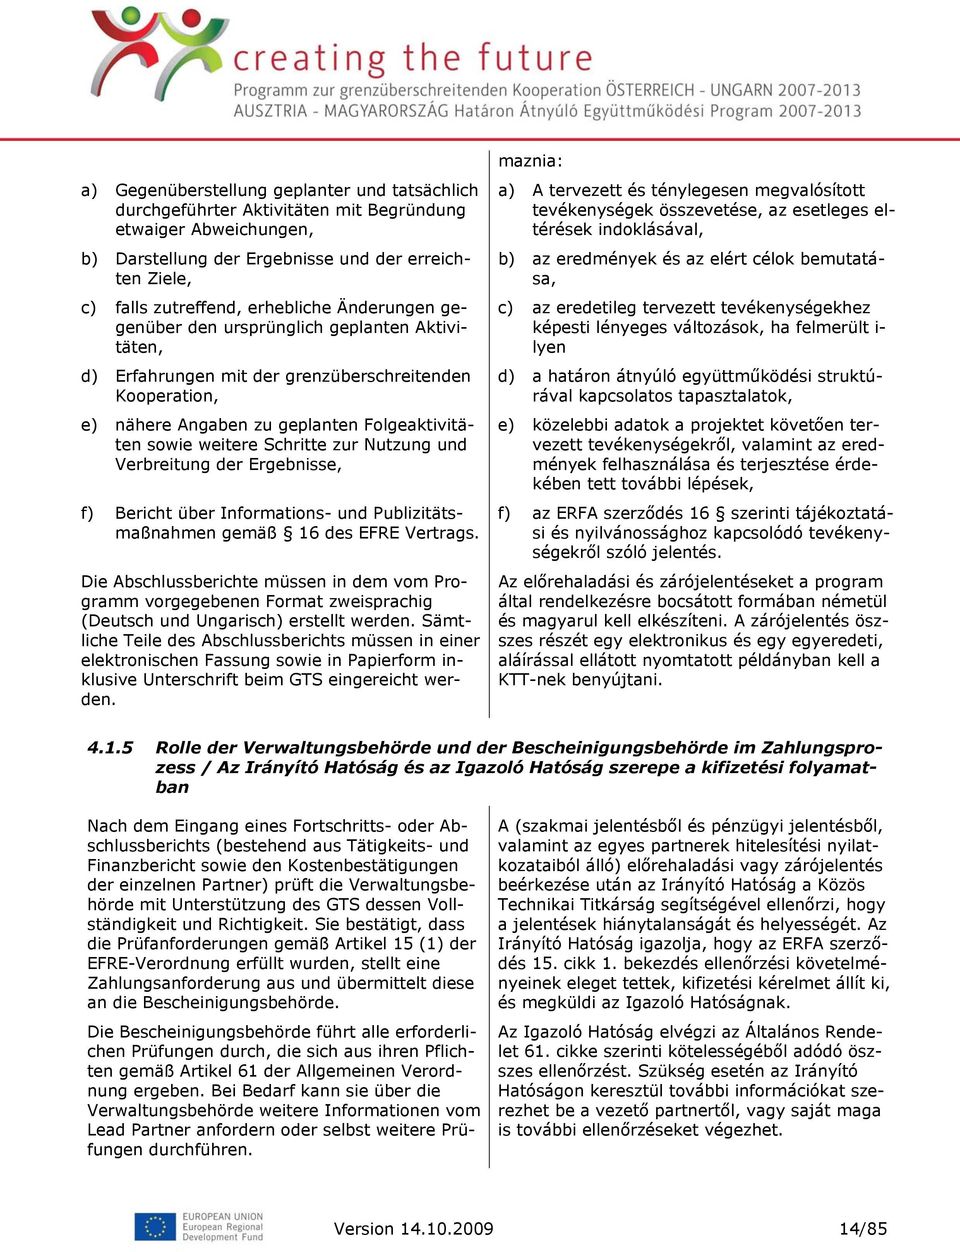 Nutzung und Verbreitung der Ergebnisse, f) Bericht über Informations- und Publizitätsmaßnahmen gemäß 16 des EFRE Vertrags.